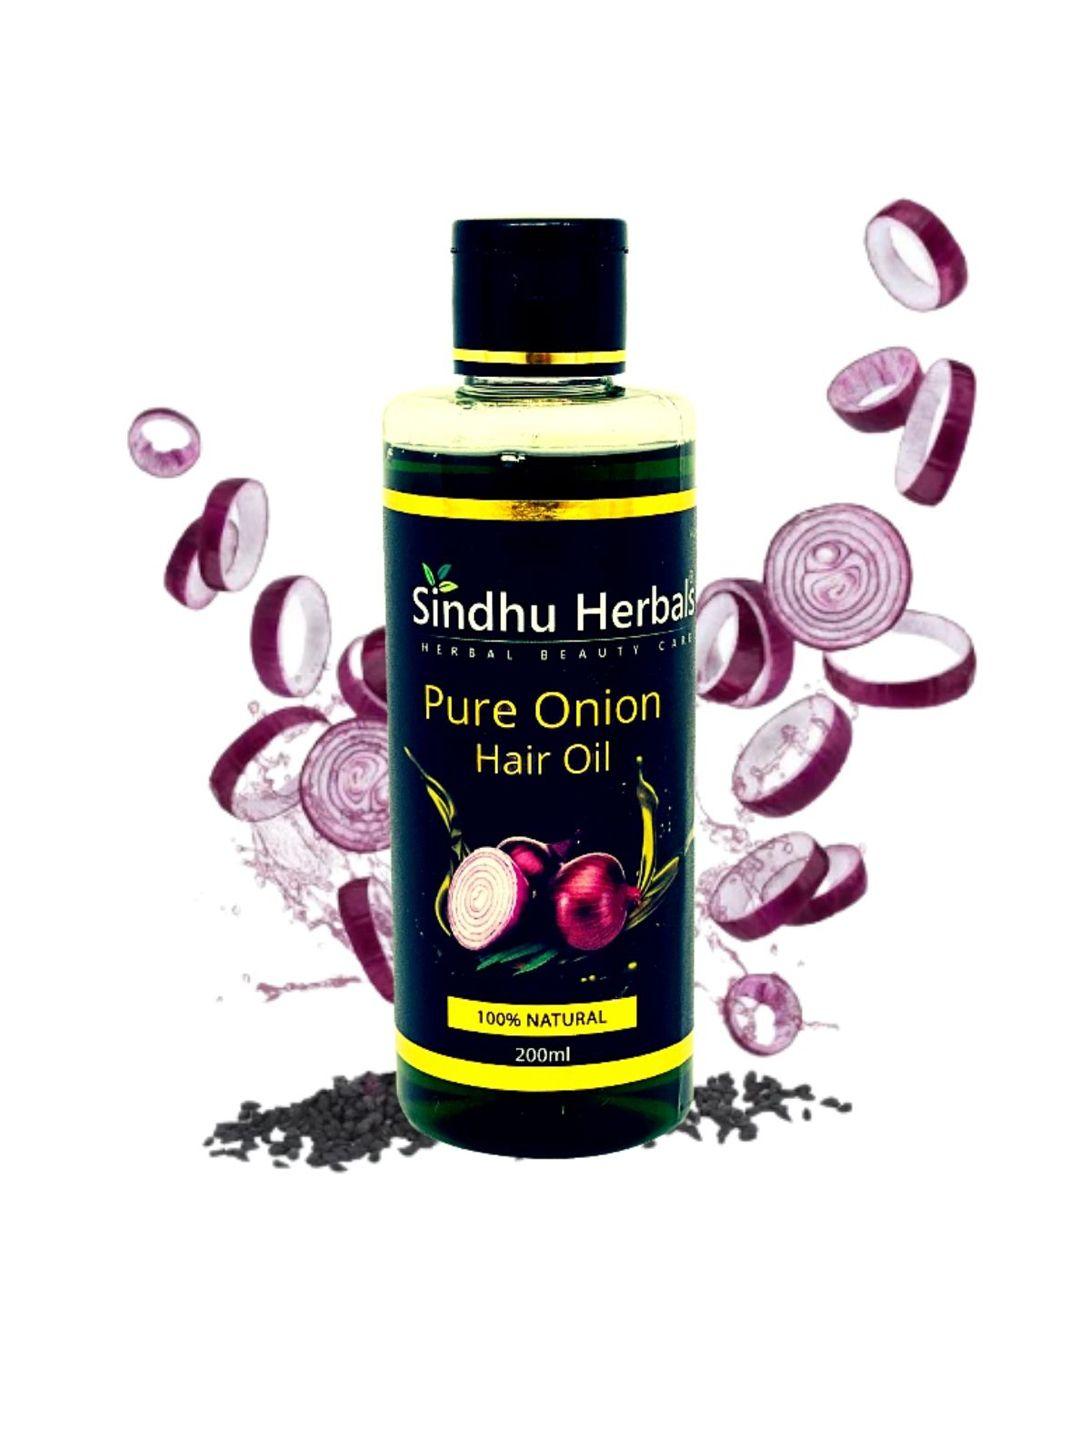 sindhu herbals pure onion hair oil for hair regrowth - 200ml